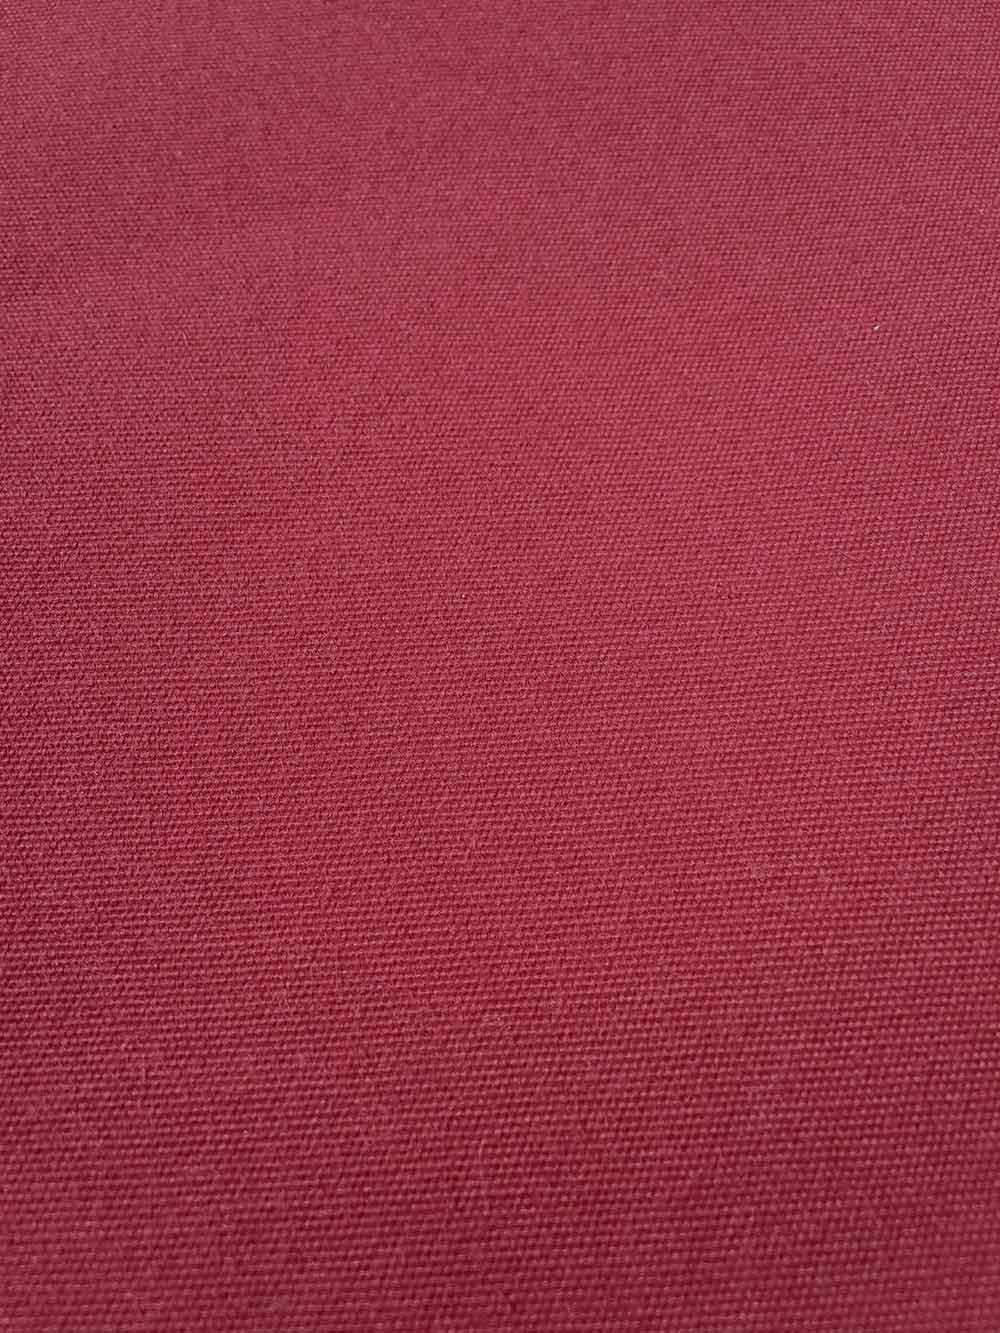 acryl doek bordeaux rood